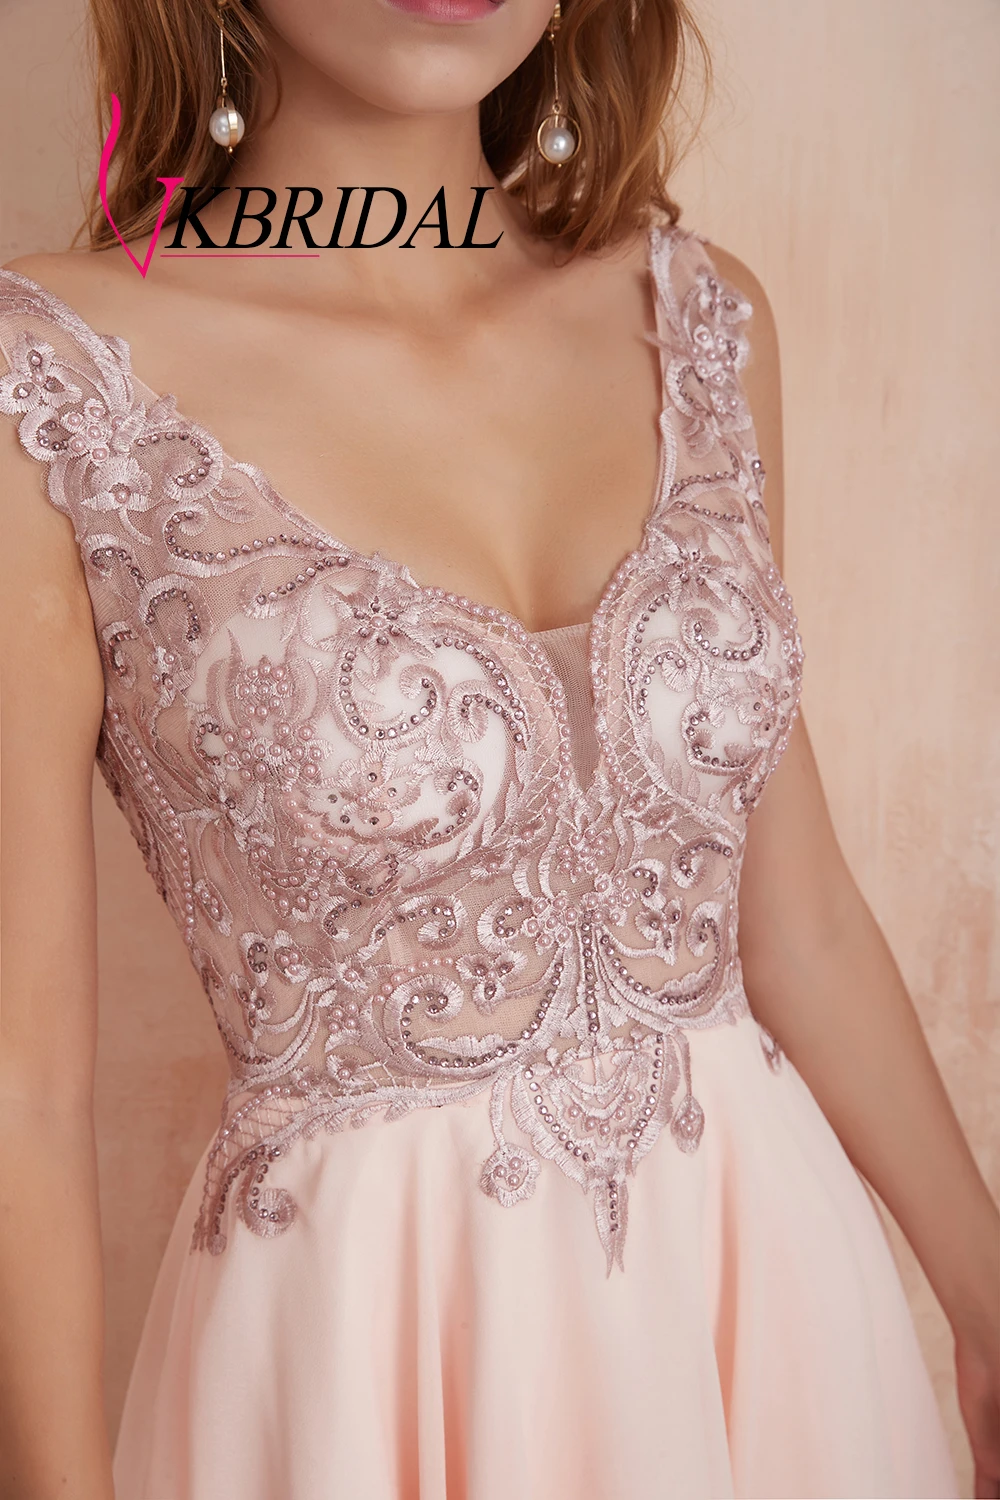 VKBRIDAL сексуальные платья для выпускного вечера с открытой спиной Короткие 2019 V-шеи шифоновые кружева бисером жемчужины розовые вечерние